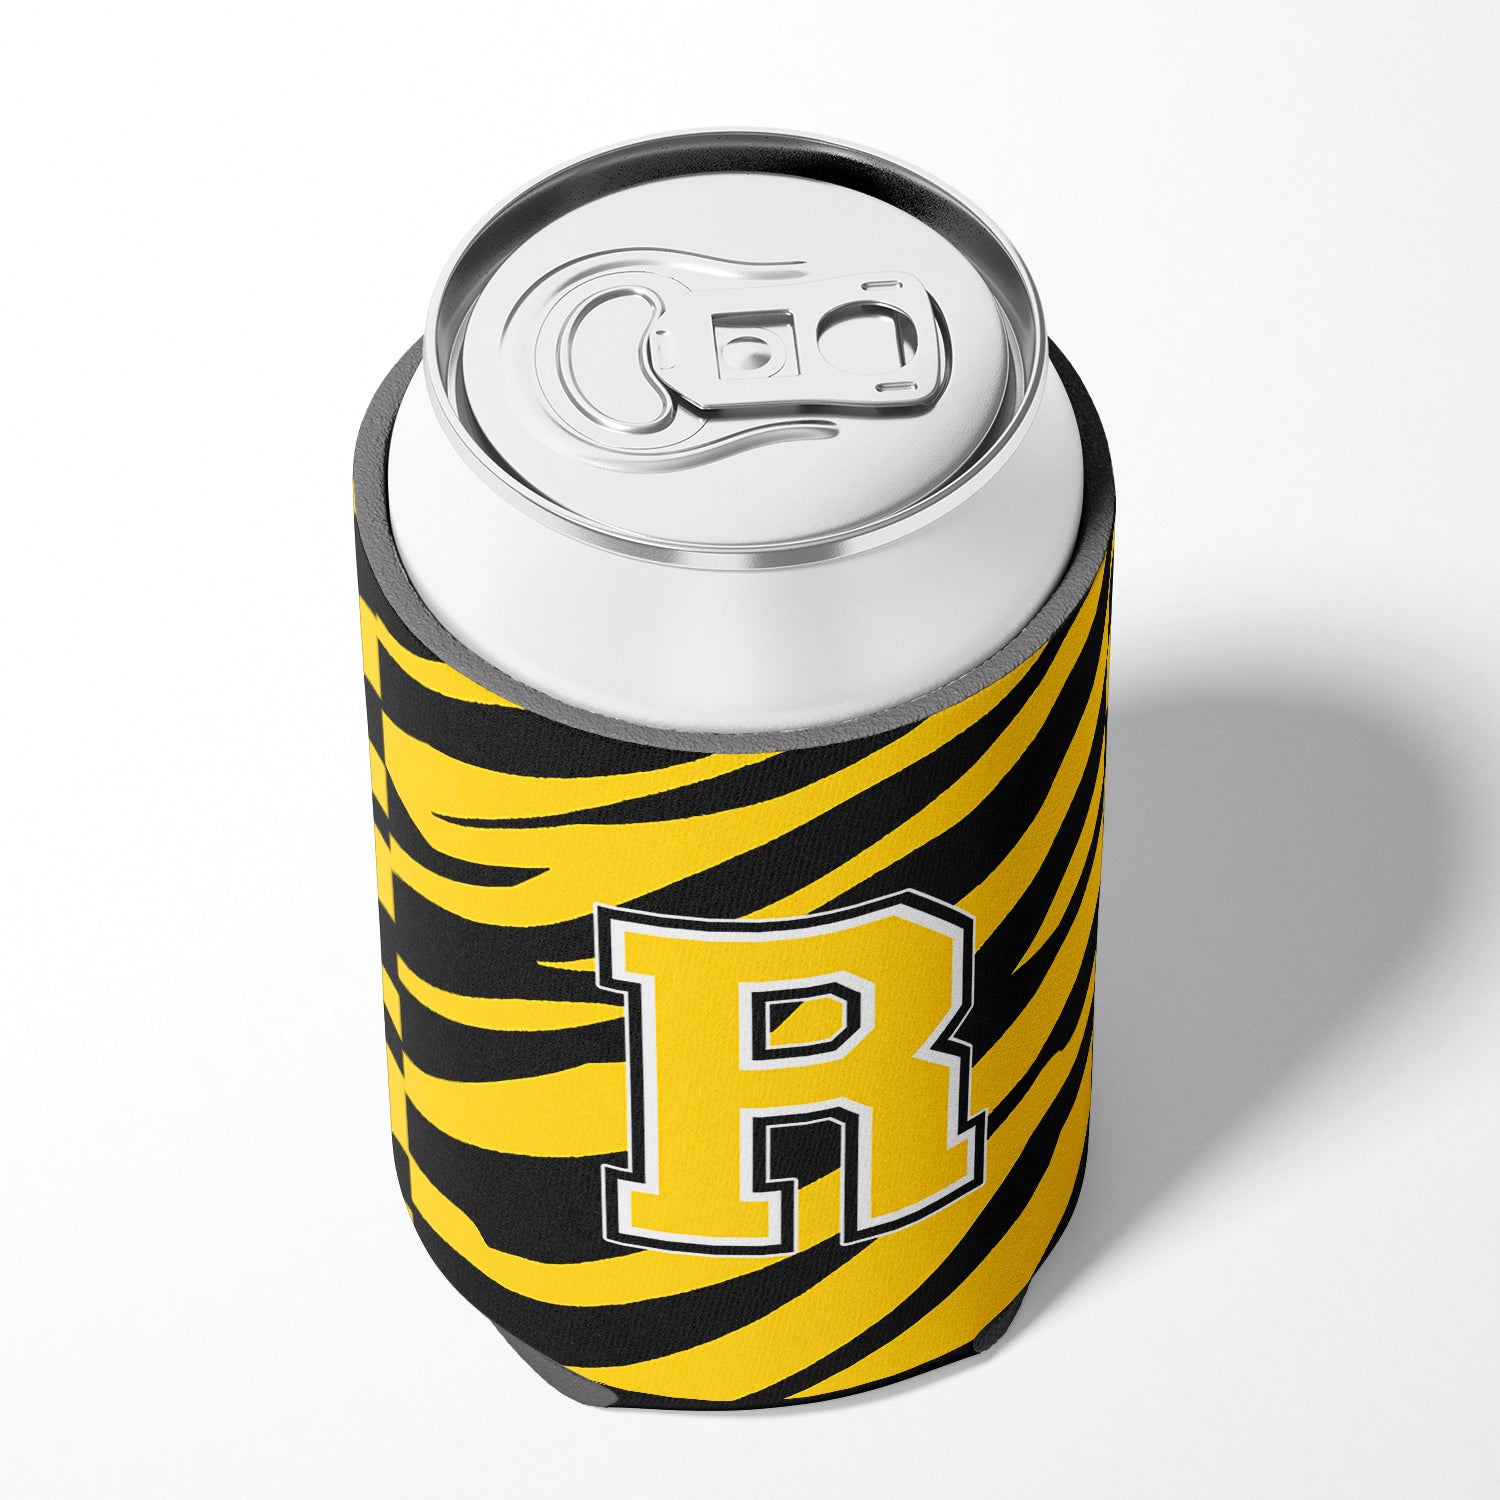 Letter R Initial Monogram - Tiger Stripe - Black Gold Can Beverage Insulator Hugger.